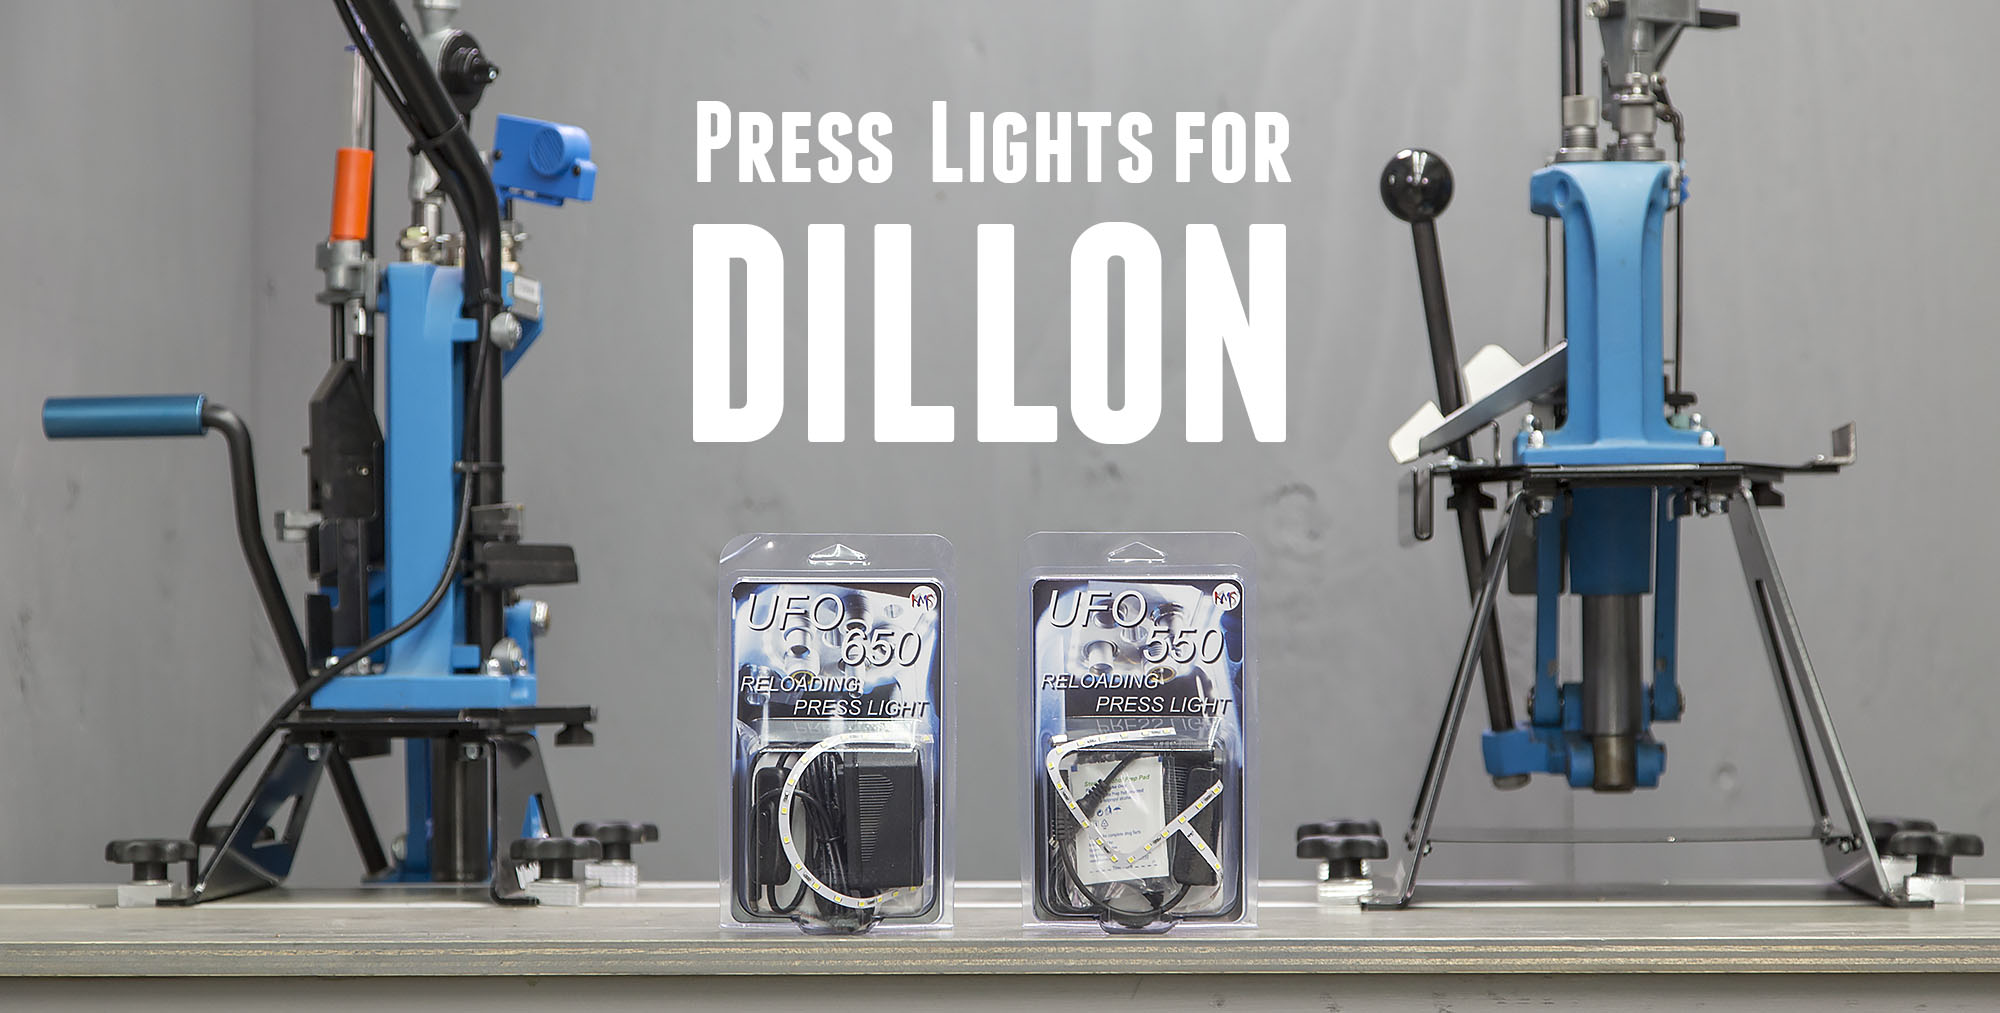 Диллон пресс. Dillon rl1100 for sale. Ома 650 пресс. Релоудер систем. Light press